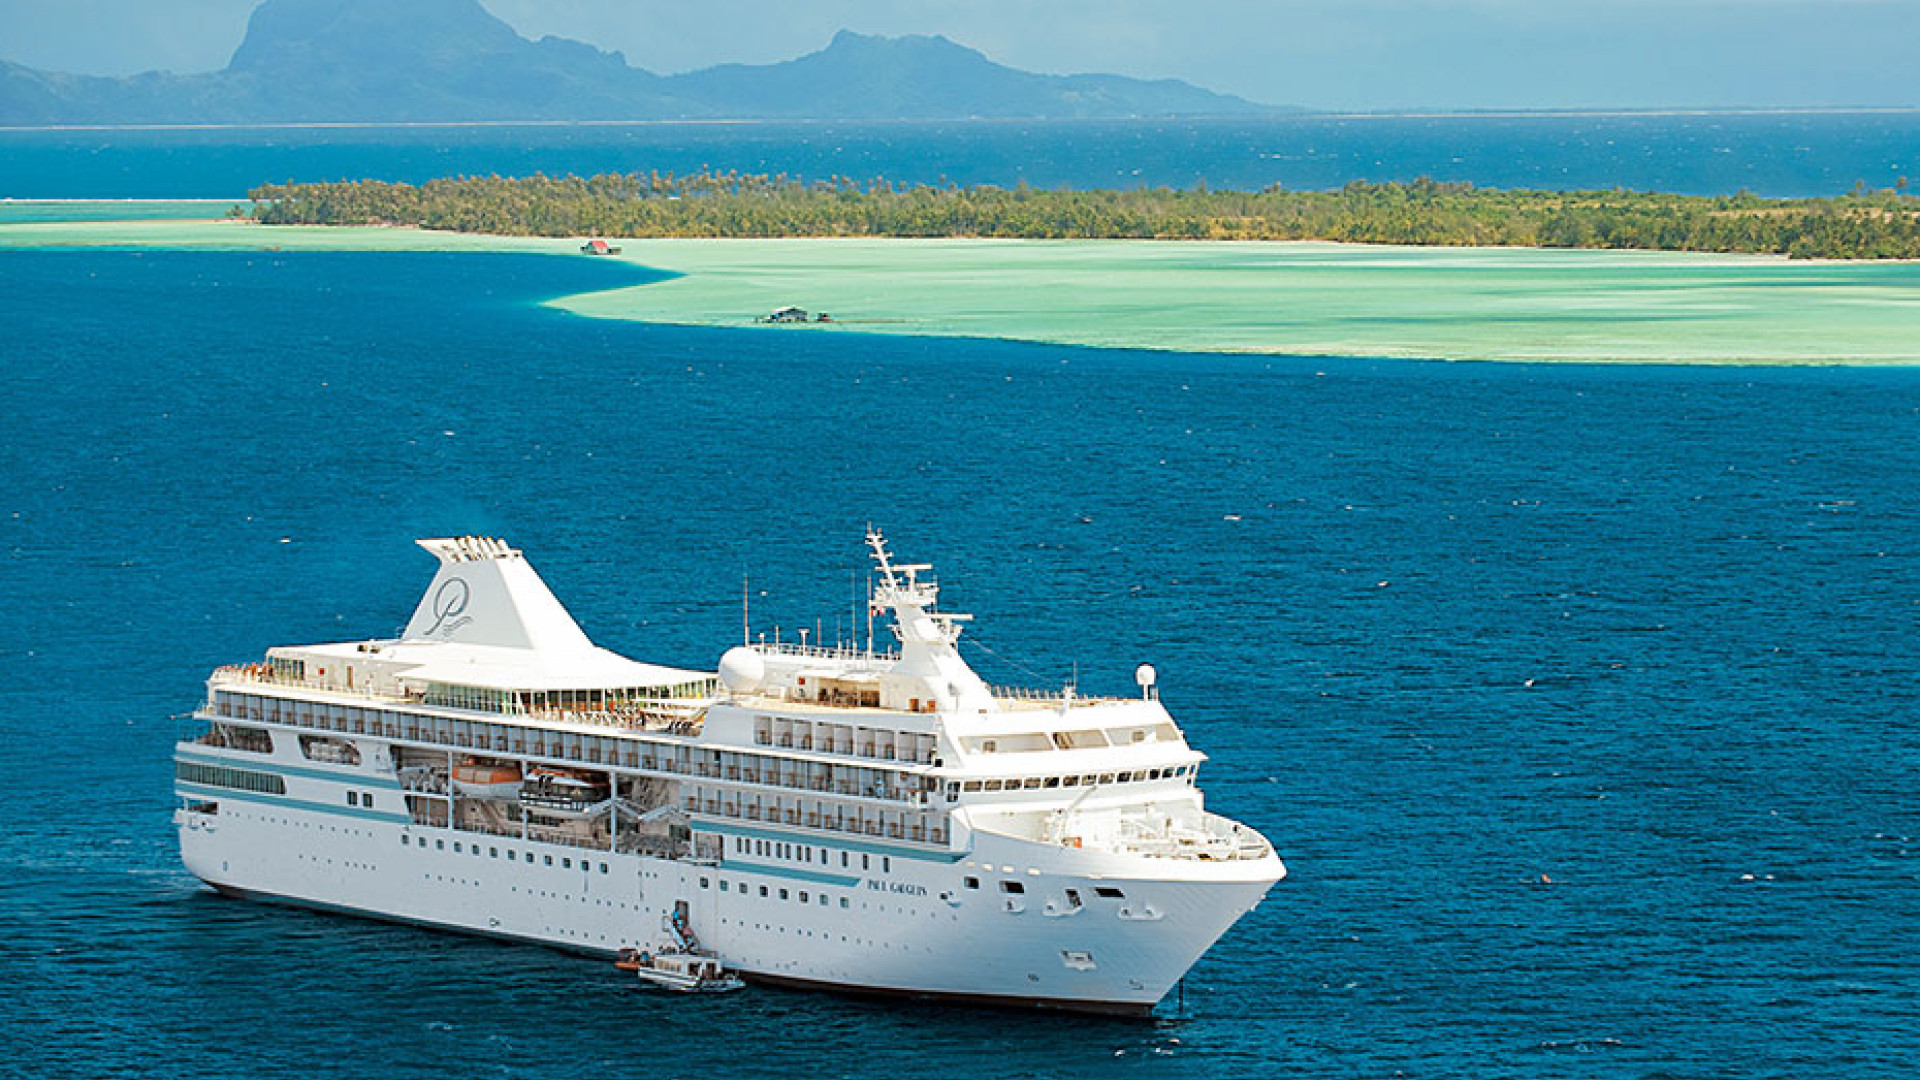 tahiti cruise royal caribbean